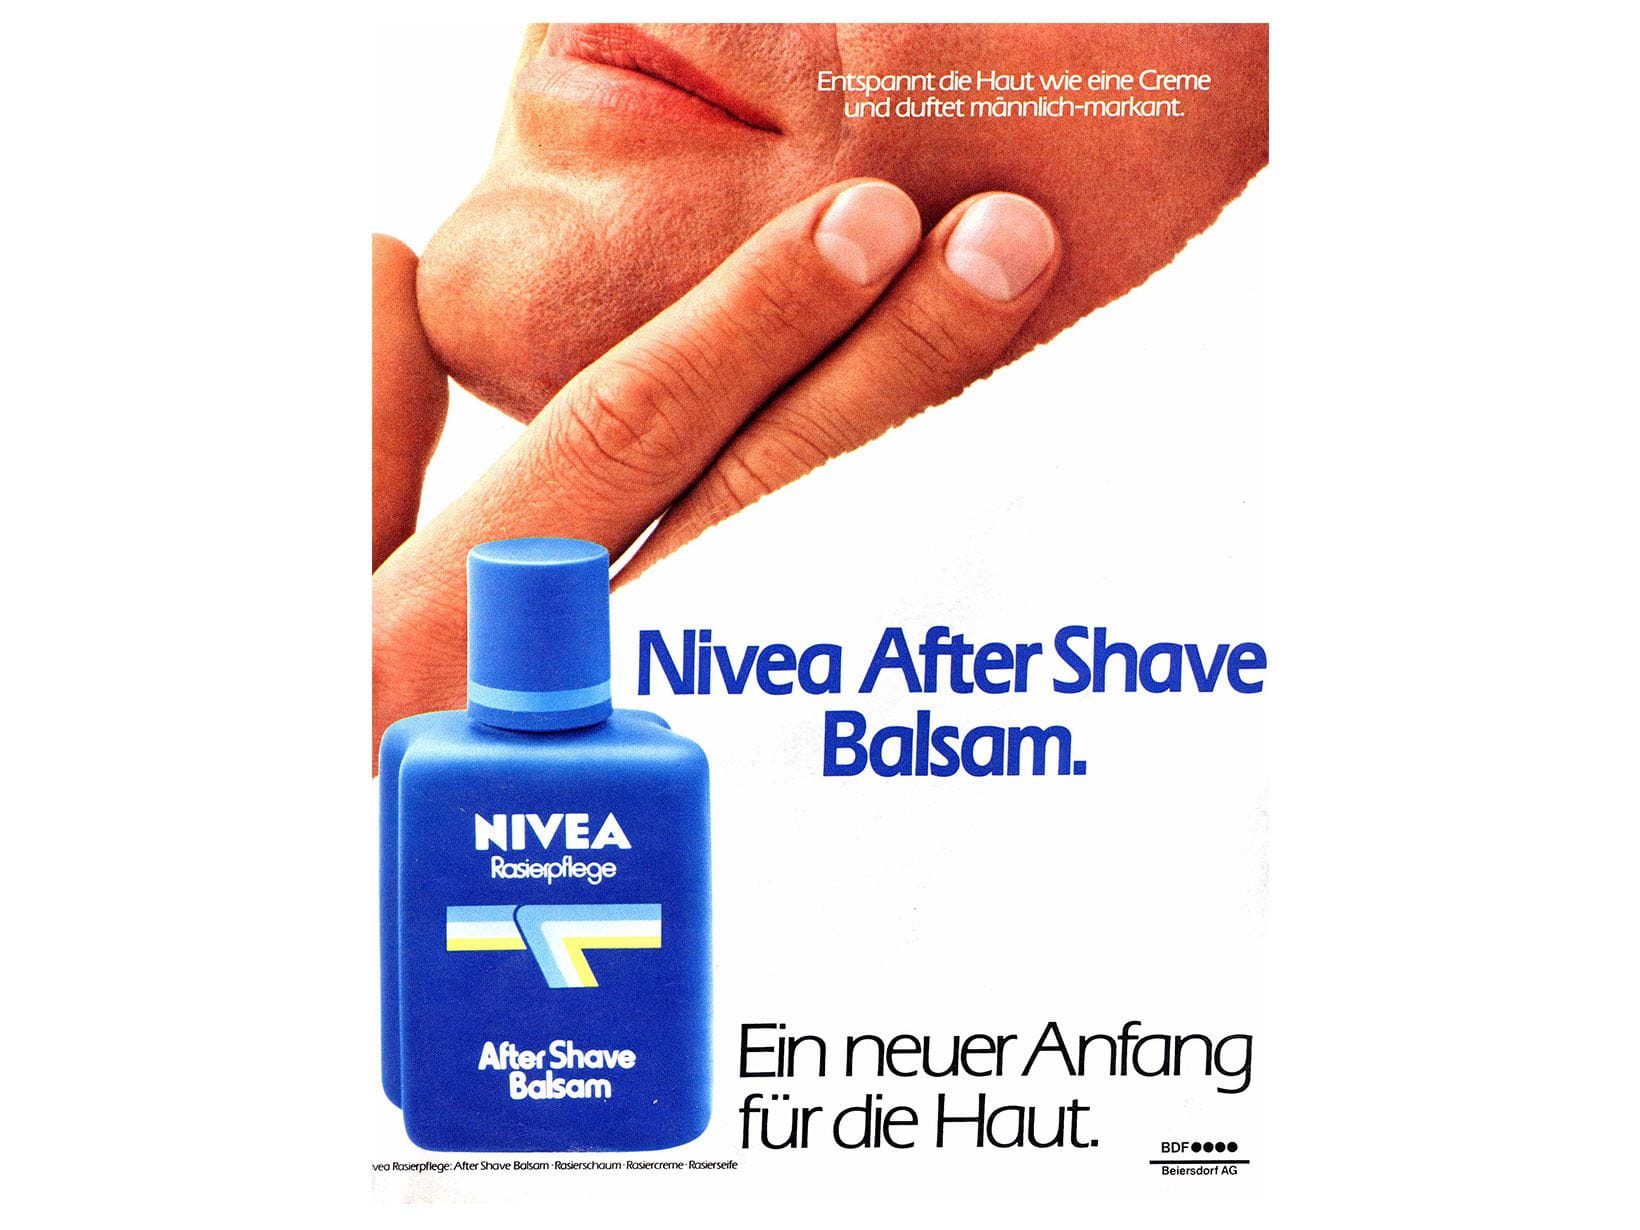 NIVEA Werbeanzeige After Shave Balsam von 1980: Ein neuer Anfang für die Haut.